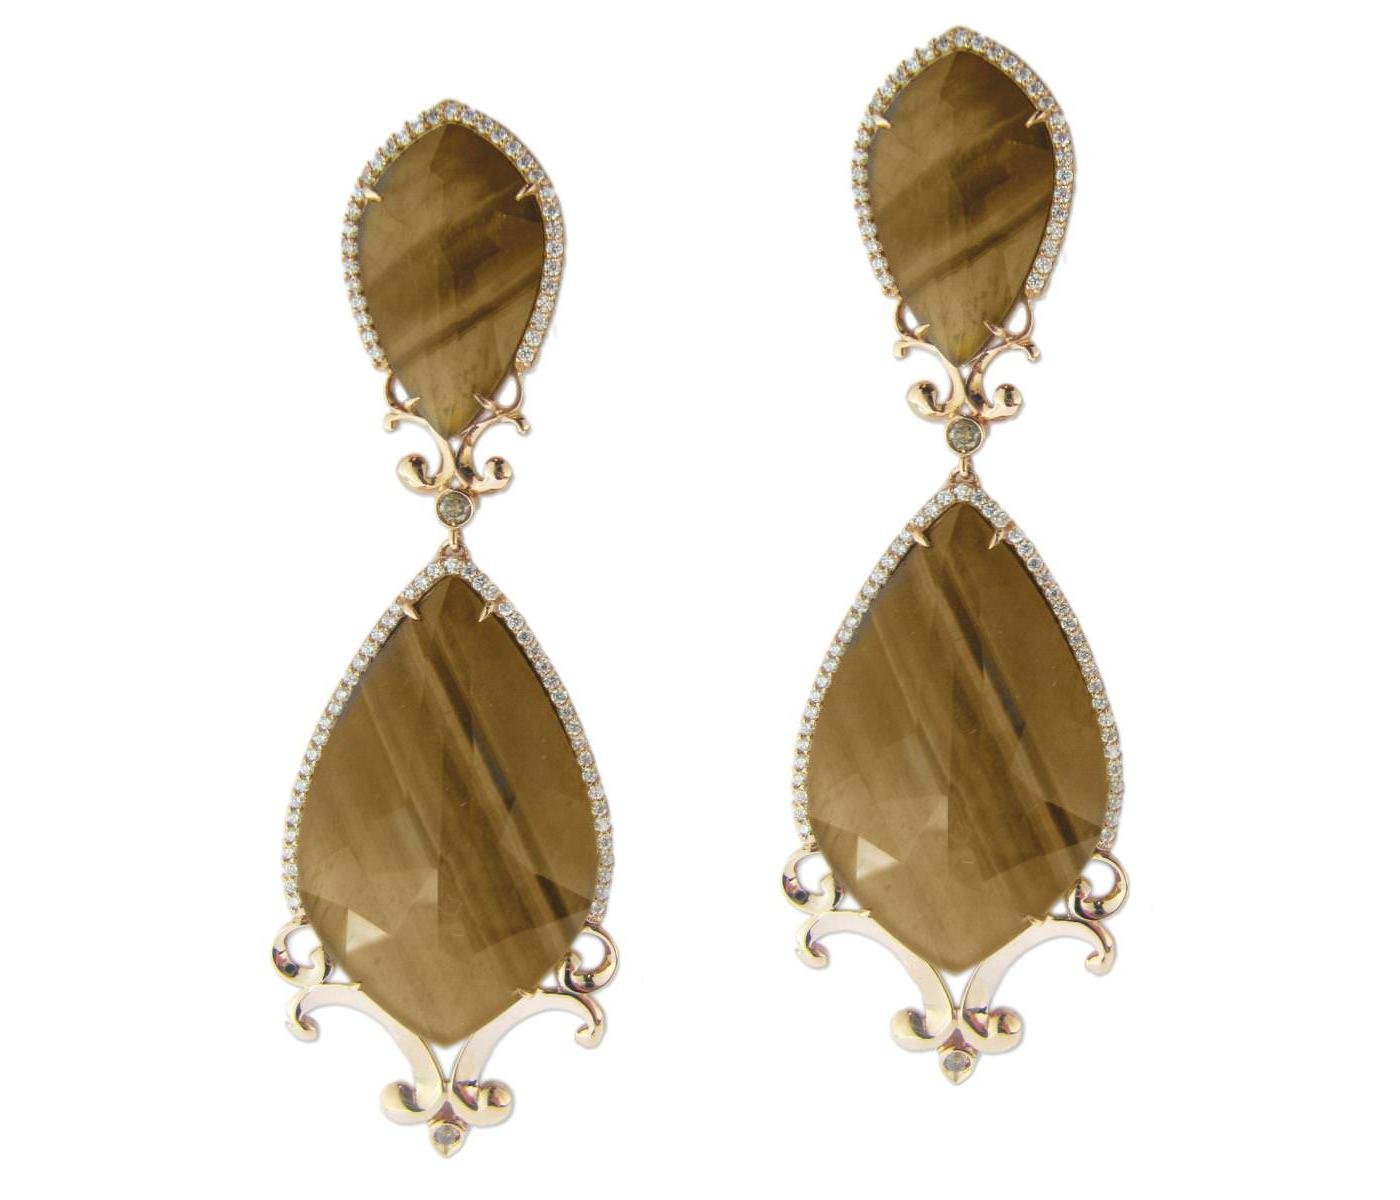 Earrings by J Jewels